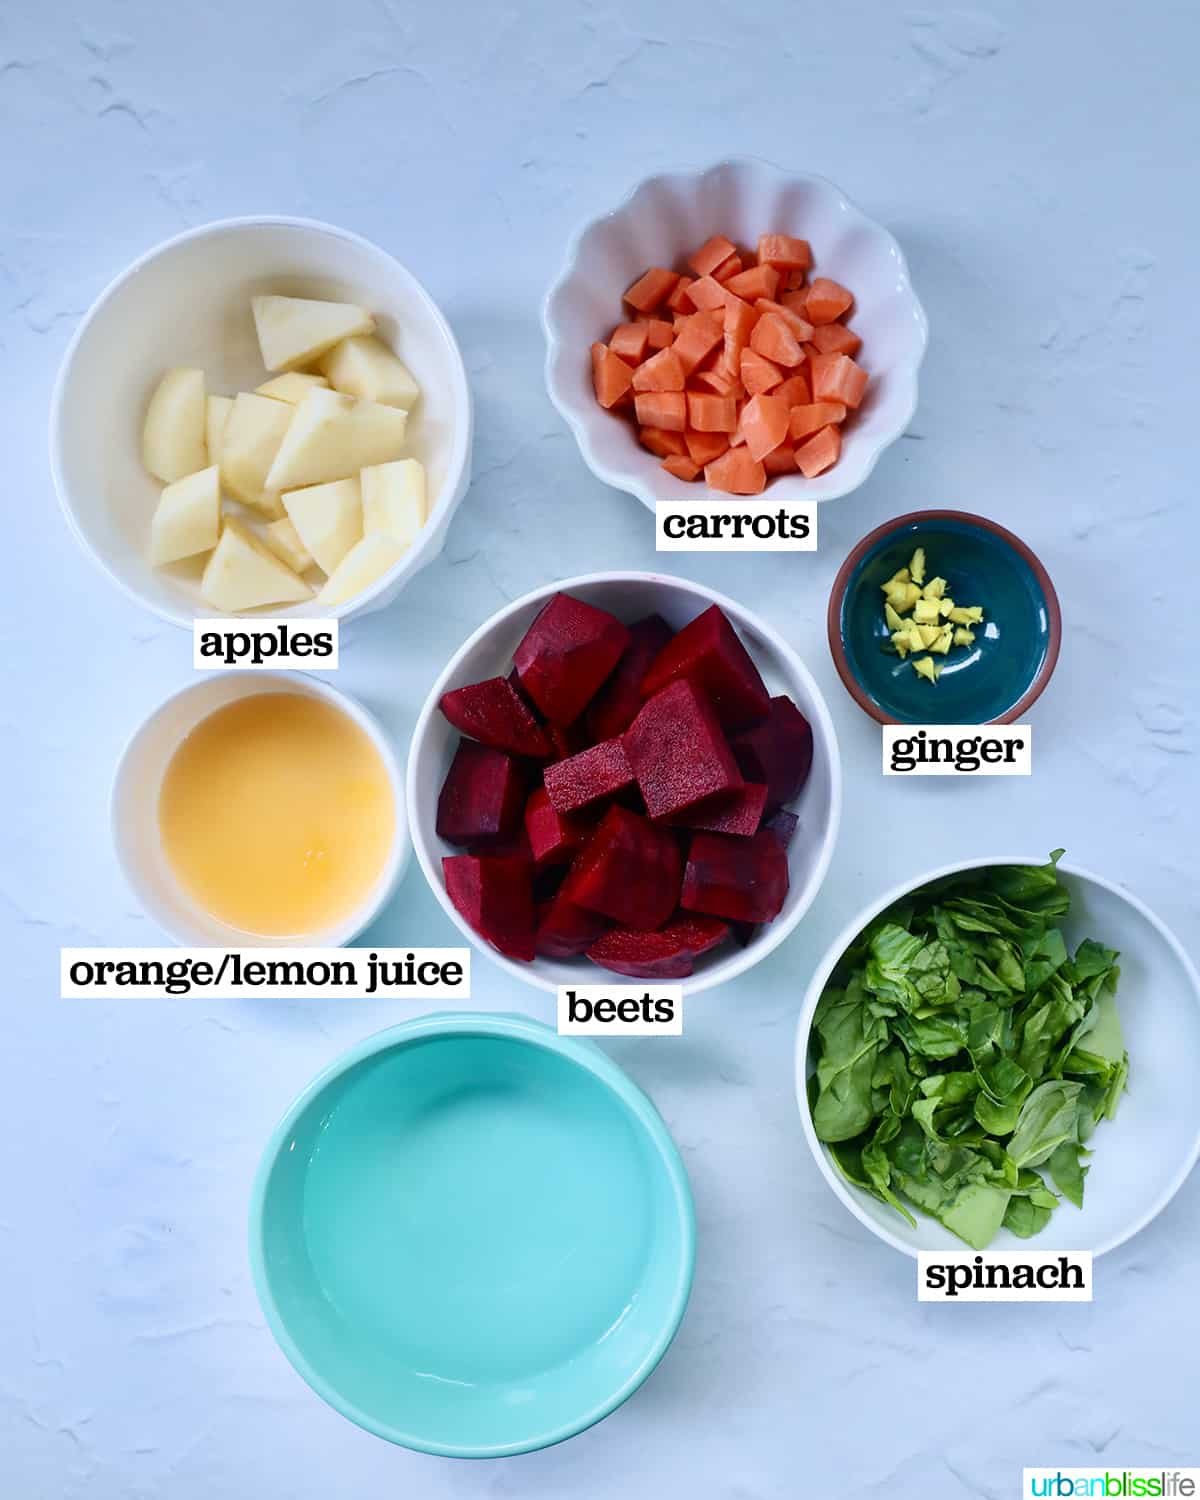 bowls of ingredients to make beet detox juice.